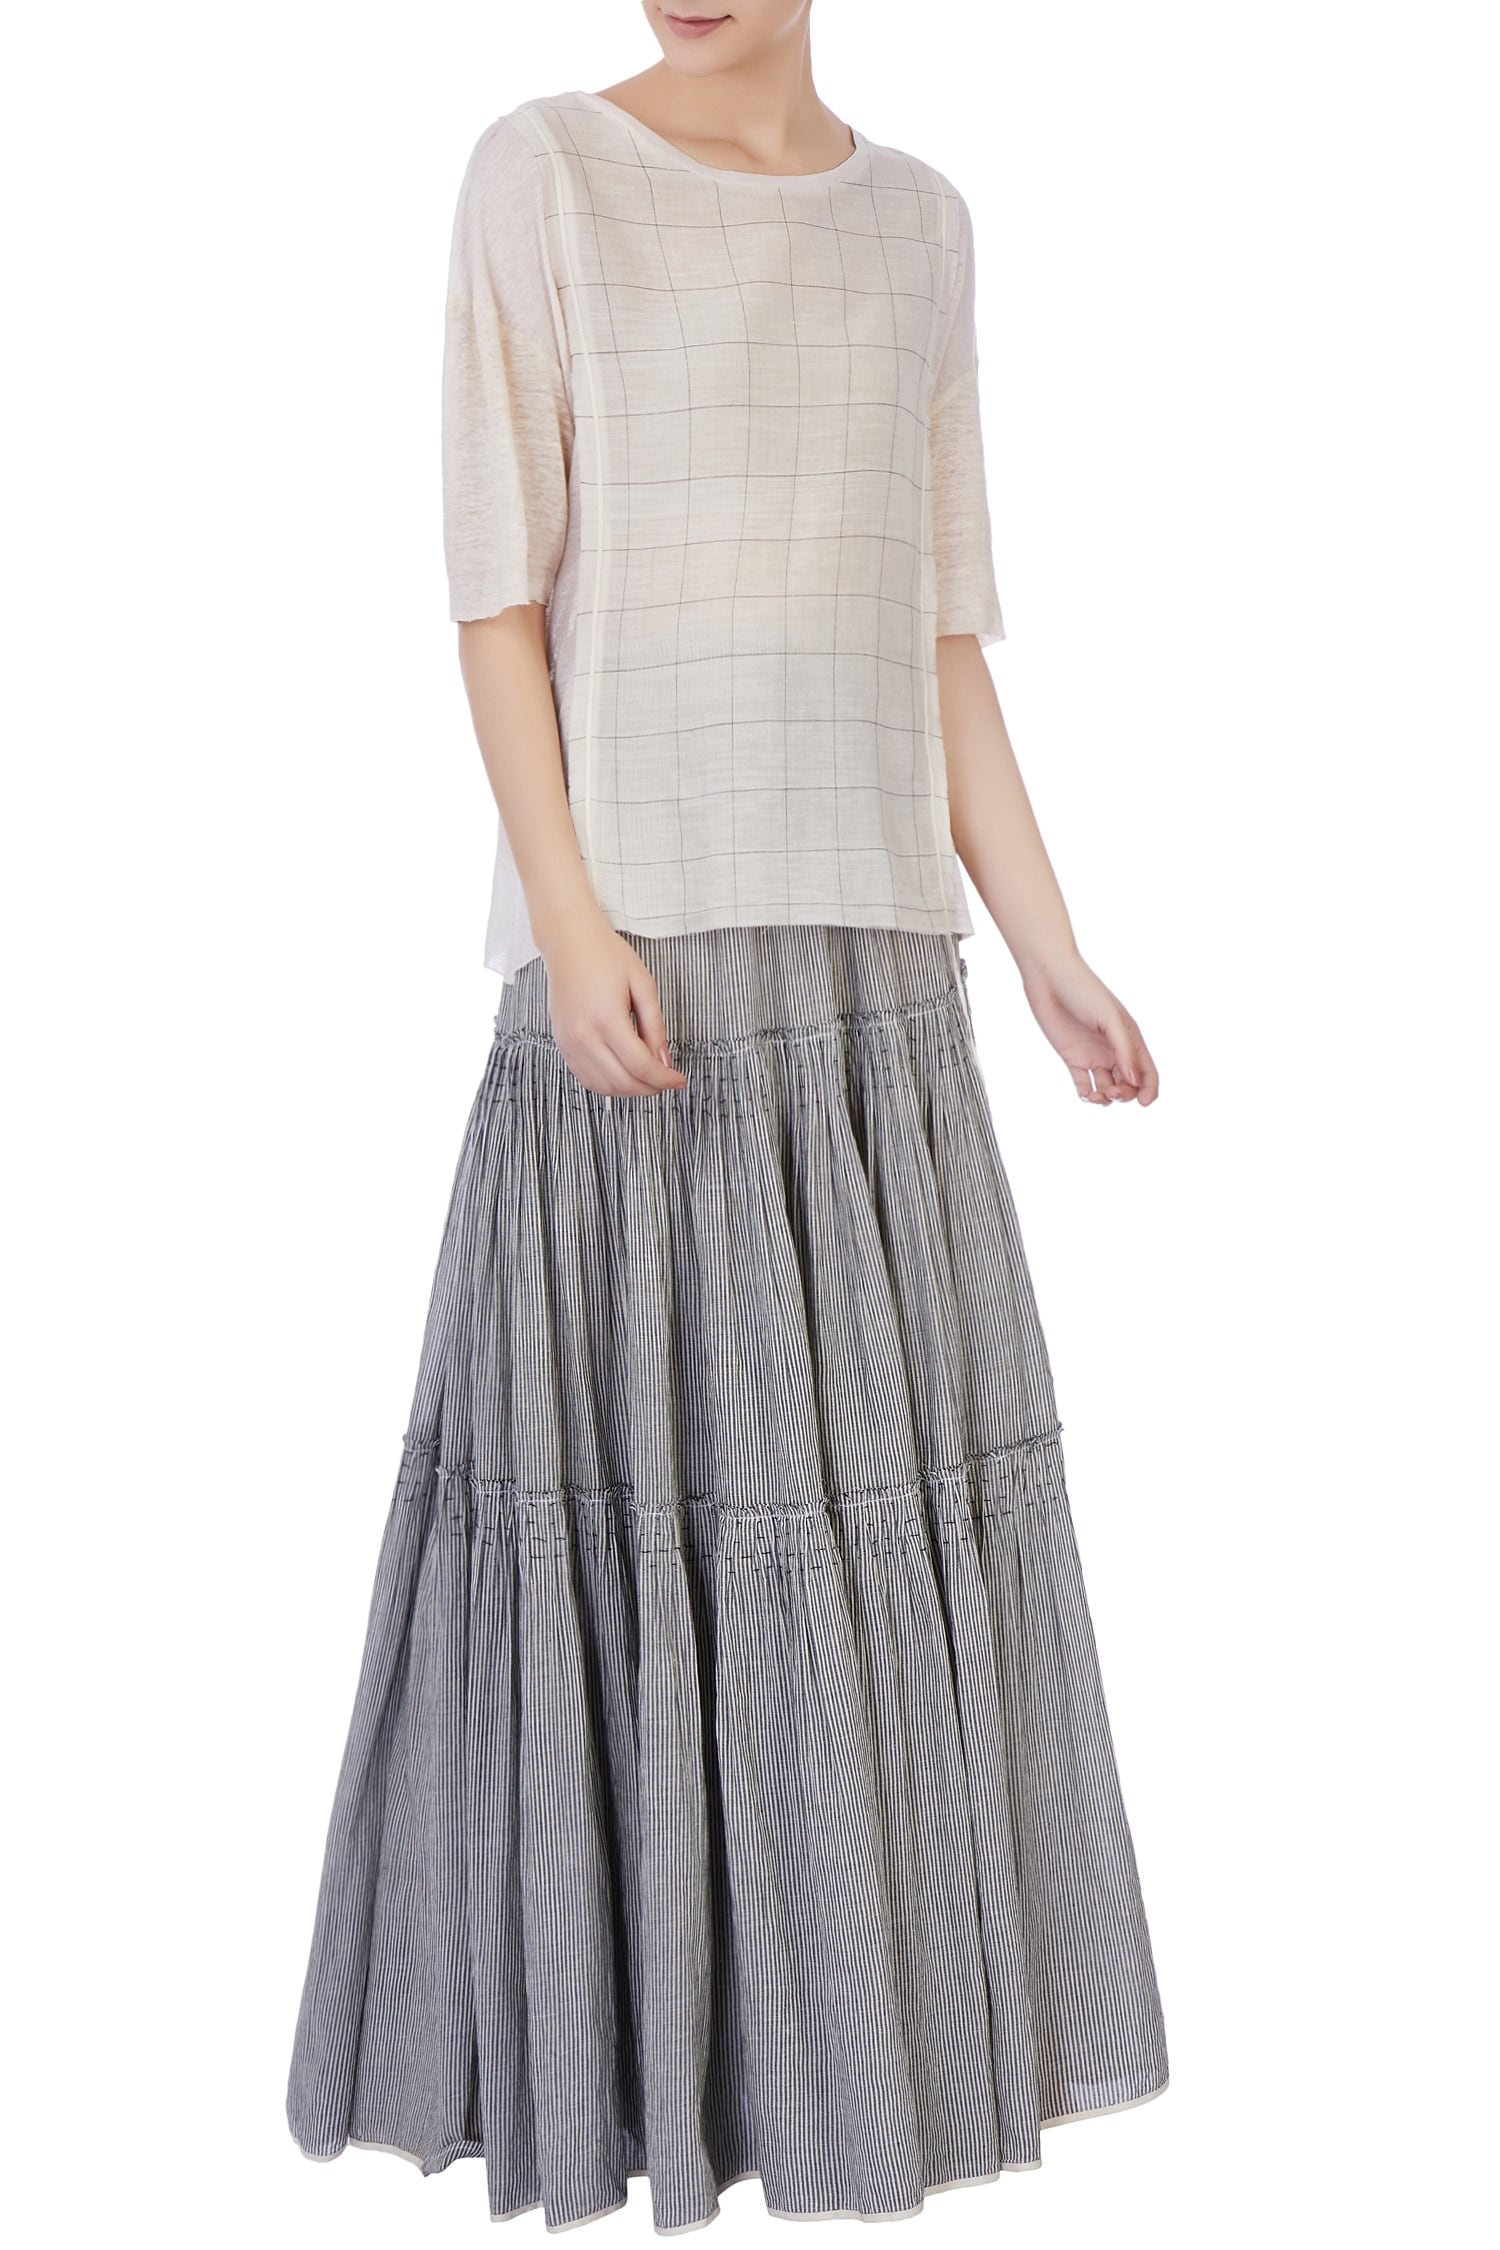 Urvashi Kaur Grey Organic Handwoven Cotton Top And Skirt Set